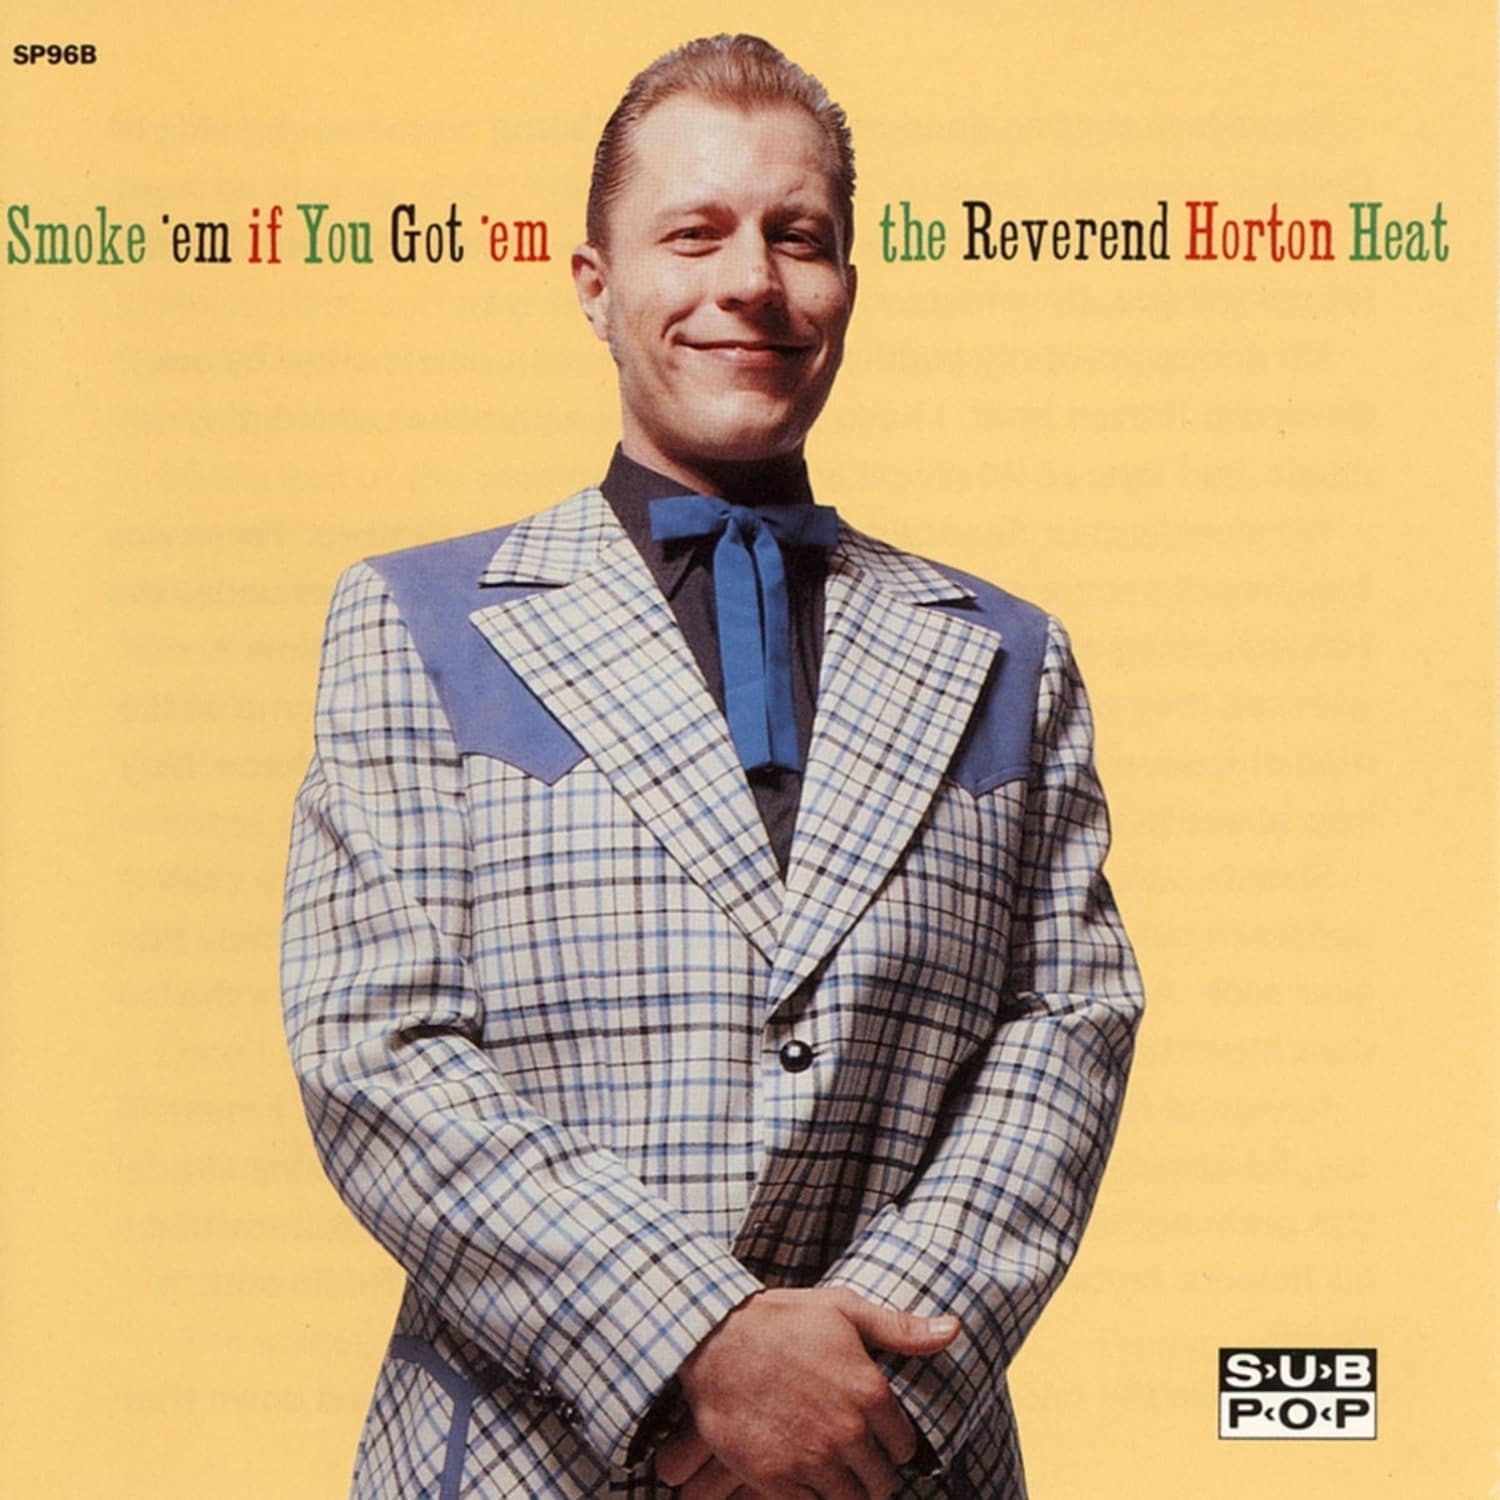 The Reverend Horton Heat - SMOKE EM IF YOU GOT EM 